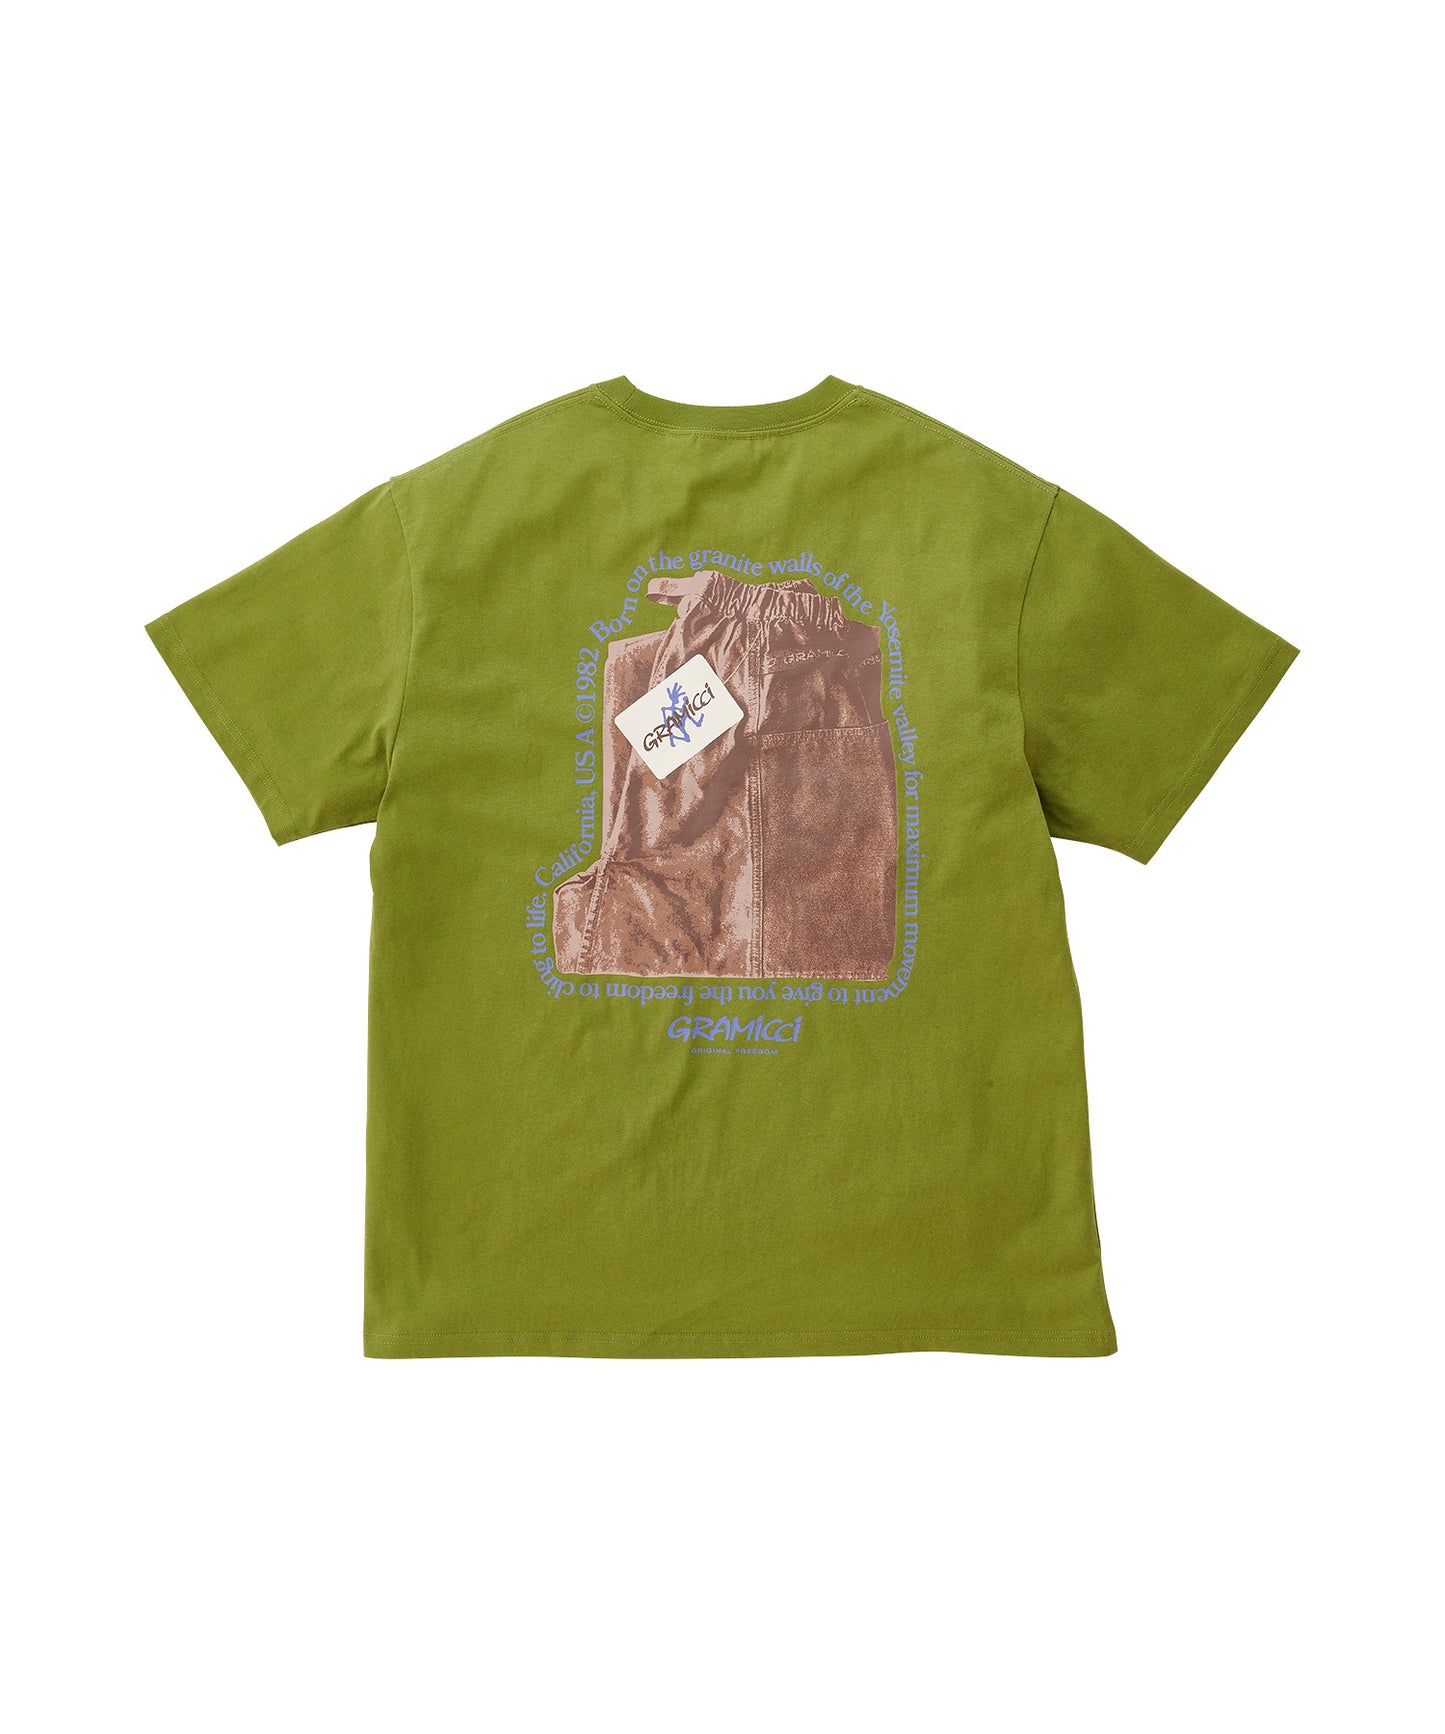 [GRAMICCI グラミチ] O.G. GADGET PANT TEE | O.GガジェットパンツTシャツ